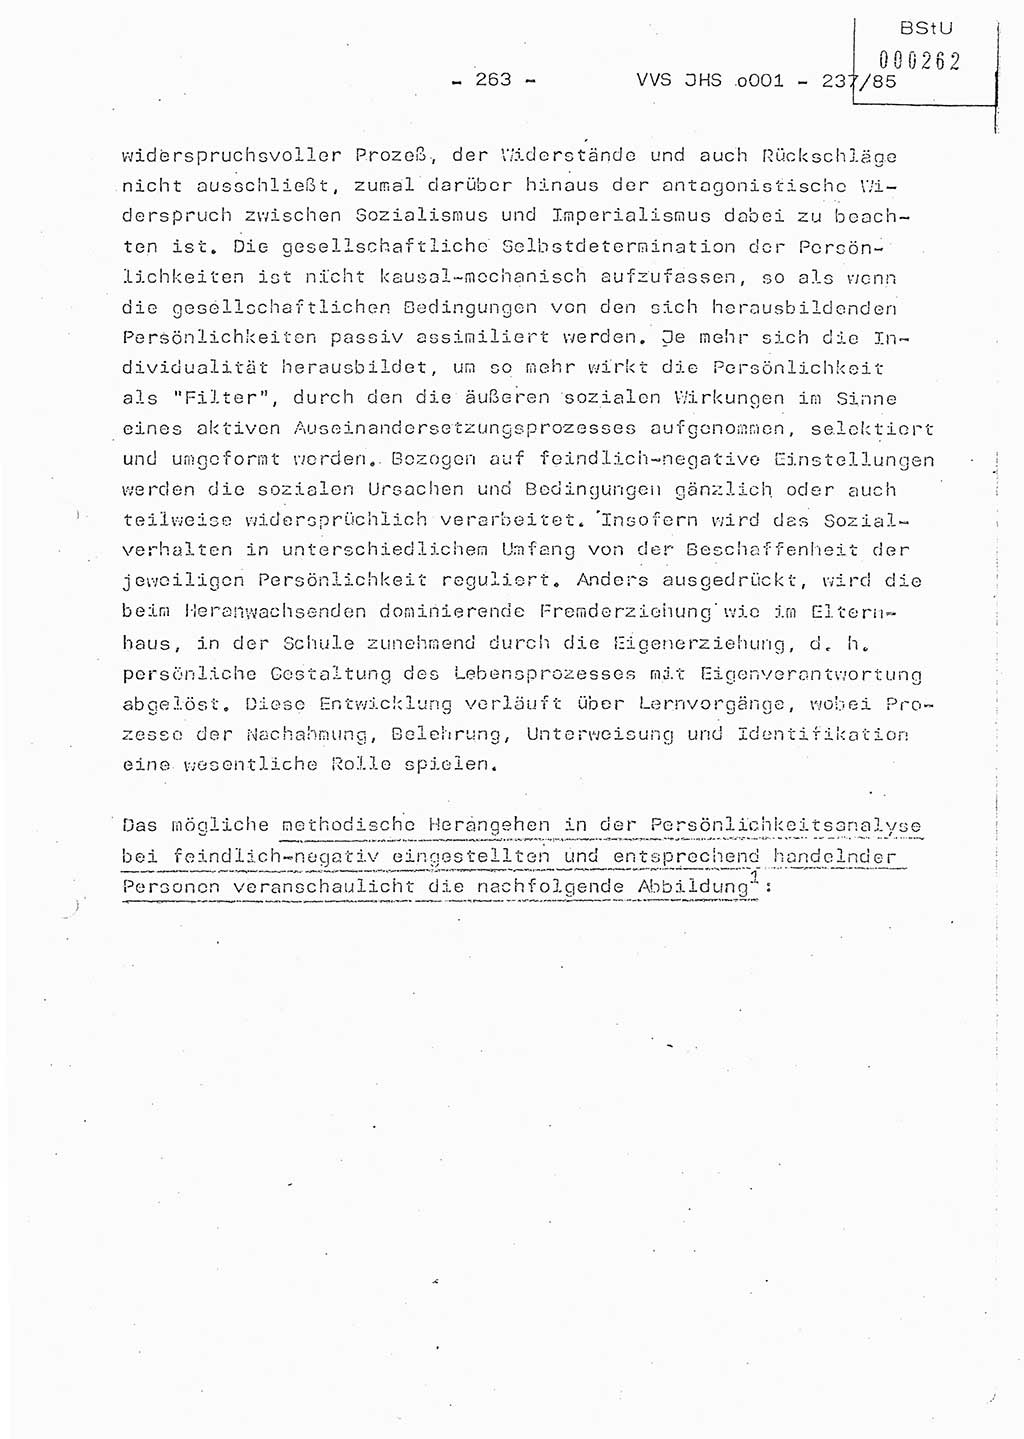 Dissertation Oberstleutnant Peter Jakulski (JHS), Oberstleutnat Christian Rudolph (HA Ⅸ), Major Horst Böttger (ZMD), Major Wolfgang Grüneberg (JHS), Major Albert Meutsch (JHS), Ministerium für Staatssicherheit (MfS) [Deutsche Demokratische Republik (DDR)], Juristische Hochschule (JHS), Vertrauliche Verschlußsache (VVS) o001-237/85, Potsdam 1985, Seite 263 (Diss. MfS DDR JHS VVS o001-237/85 1985, S. 263)